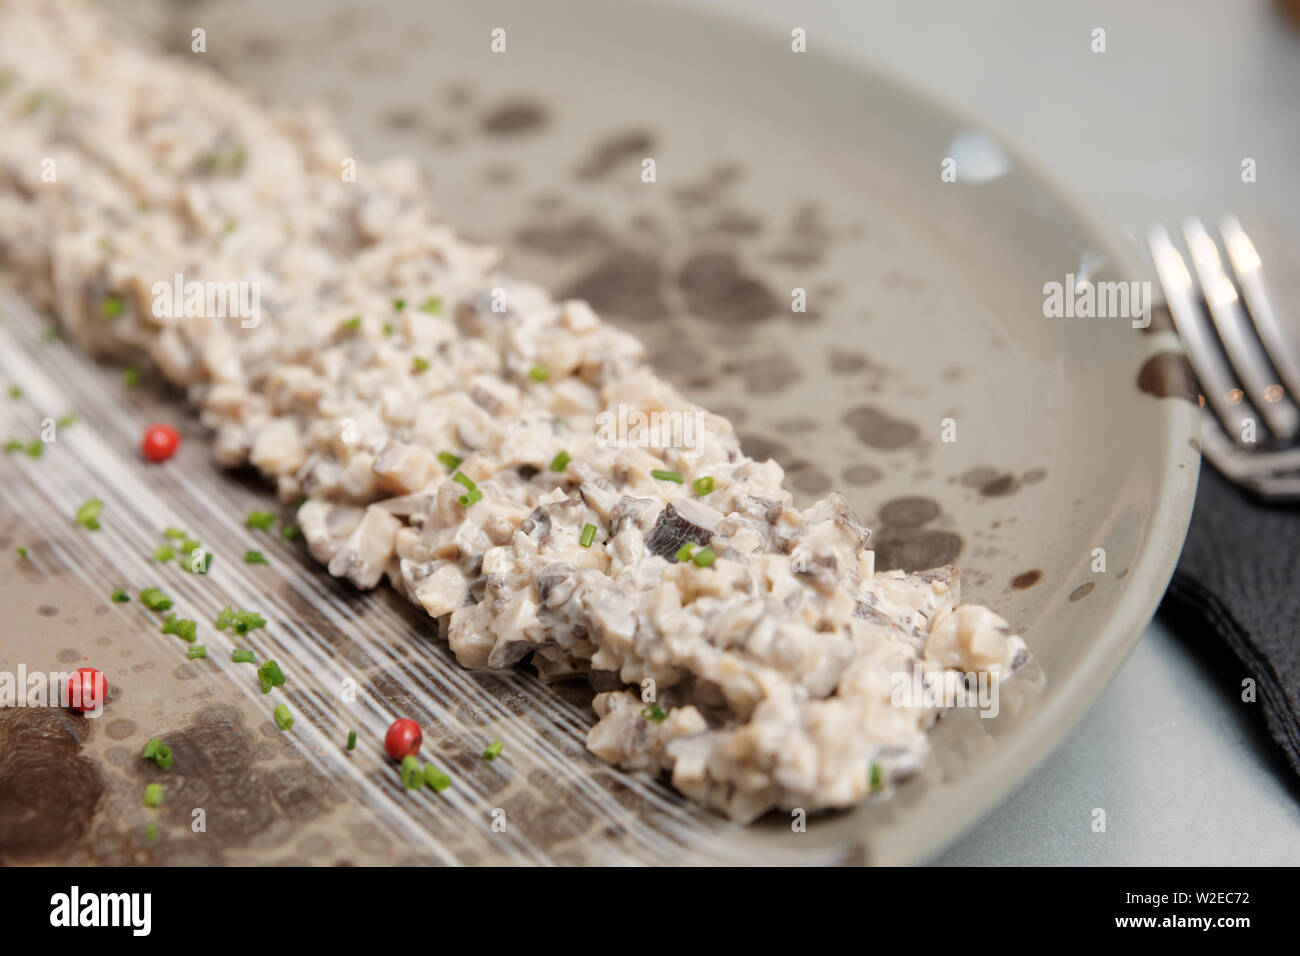 Mushroom caviar auf Platte, Nordische Küche gourmet Teller, close-up Stockfoto